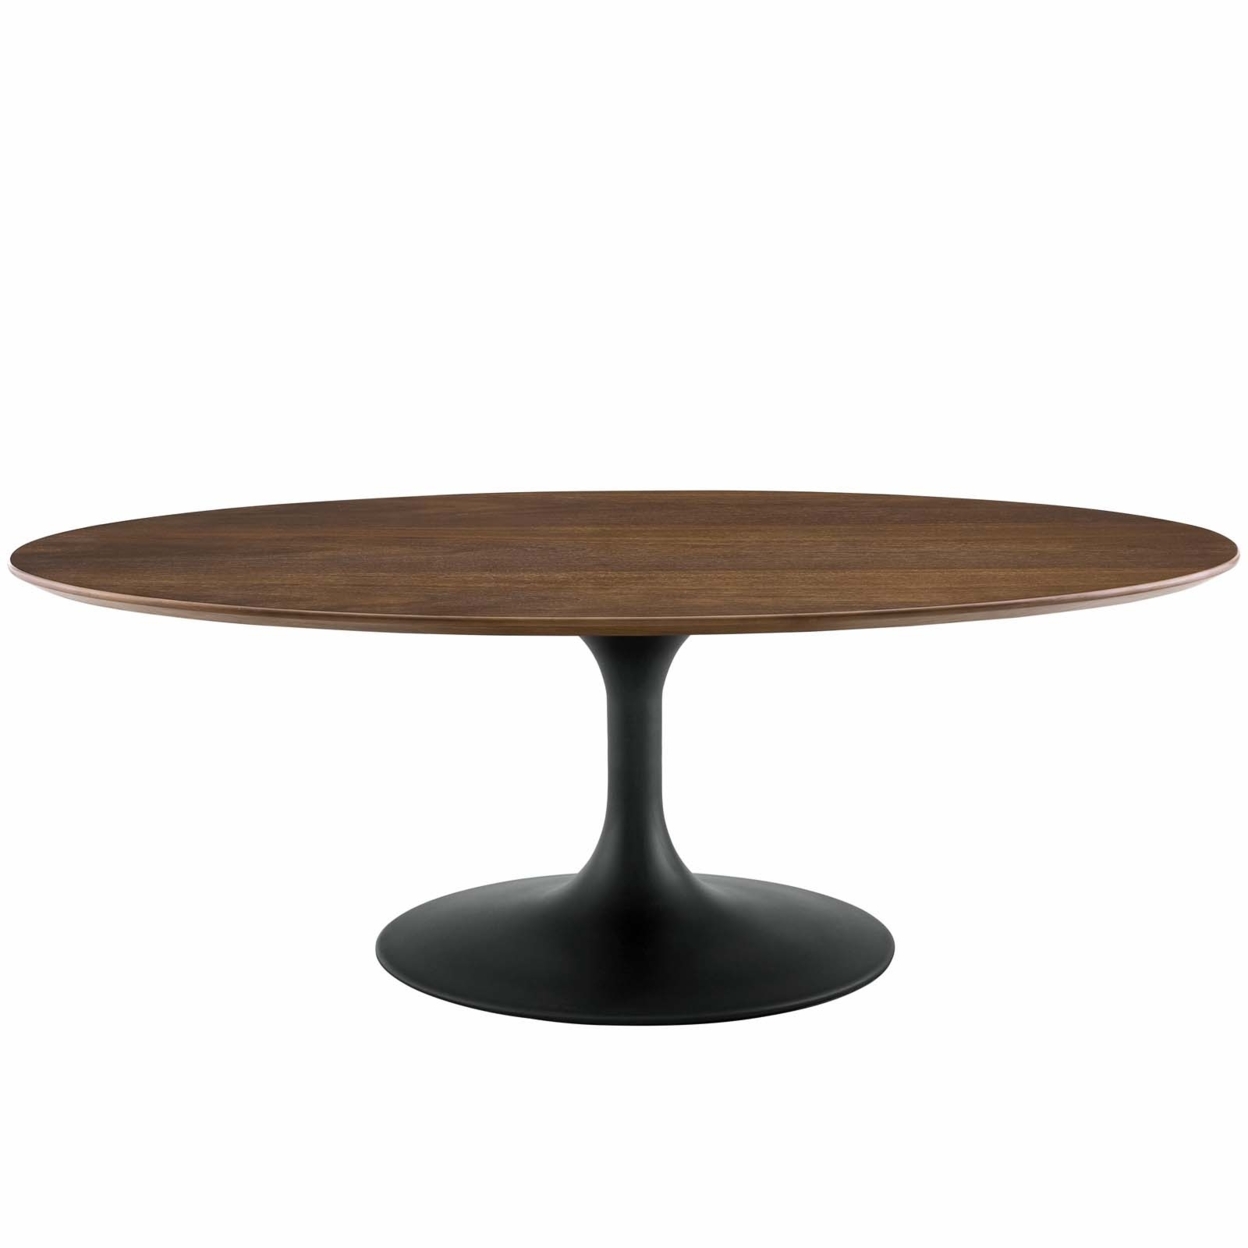 Lippa 48 Oval-Shaped Walnut Coffee Table, Black Walnut